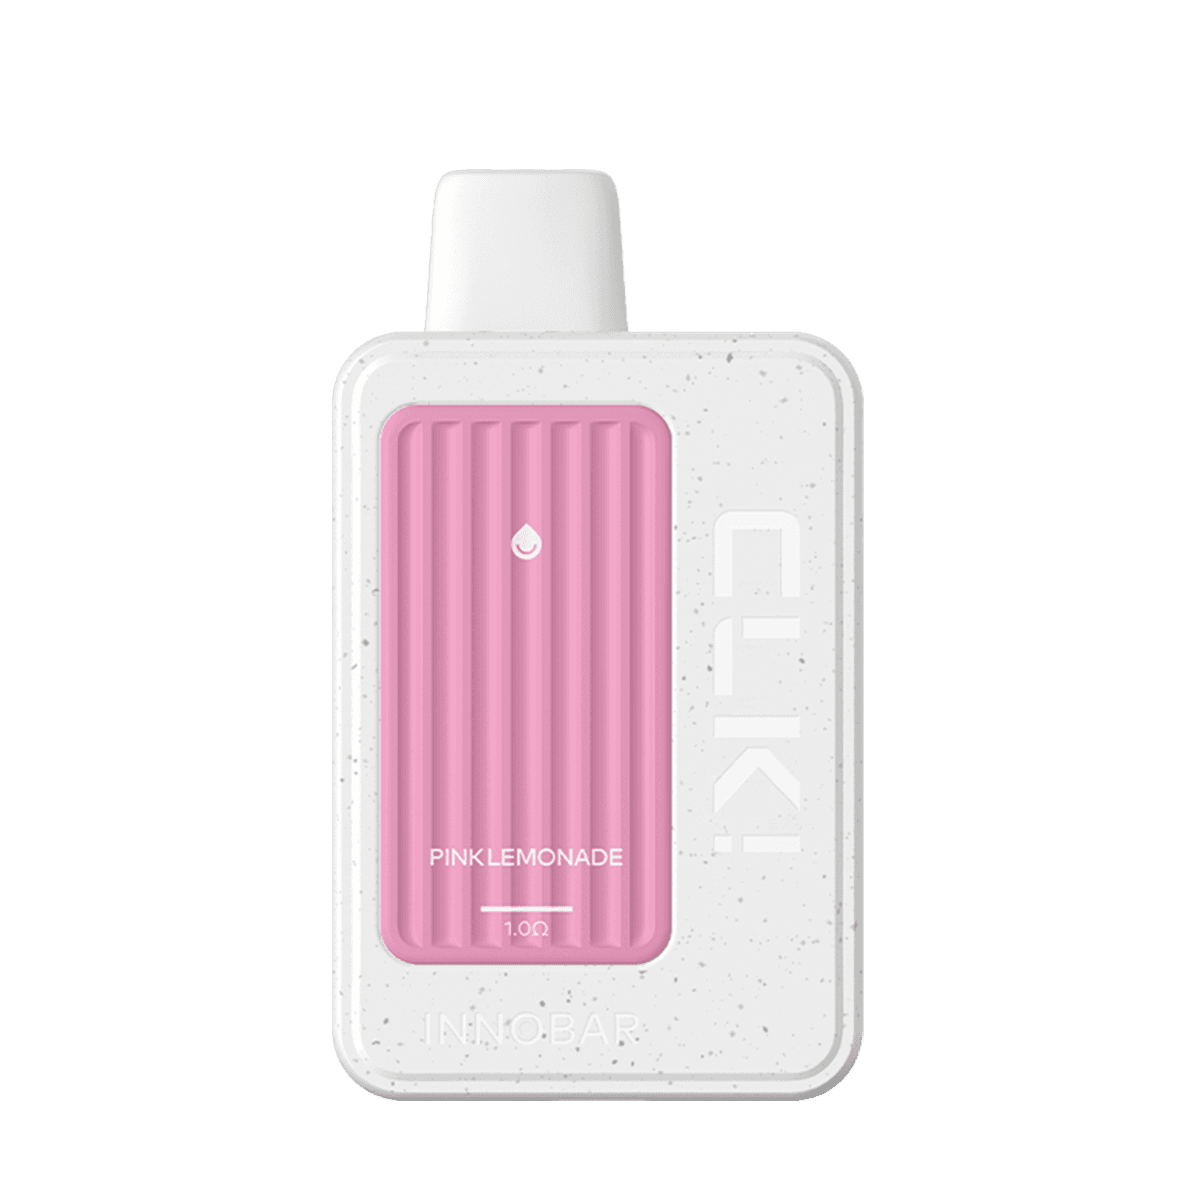 InnoBar CLK Disposable Vape White Pink Lemonade 